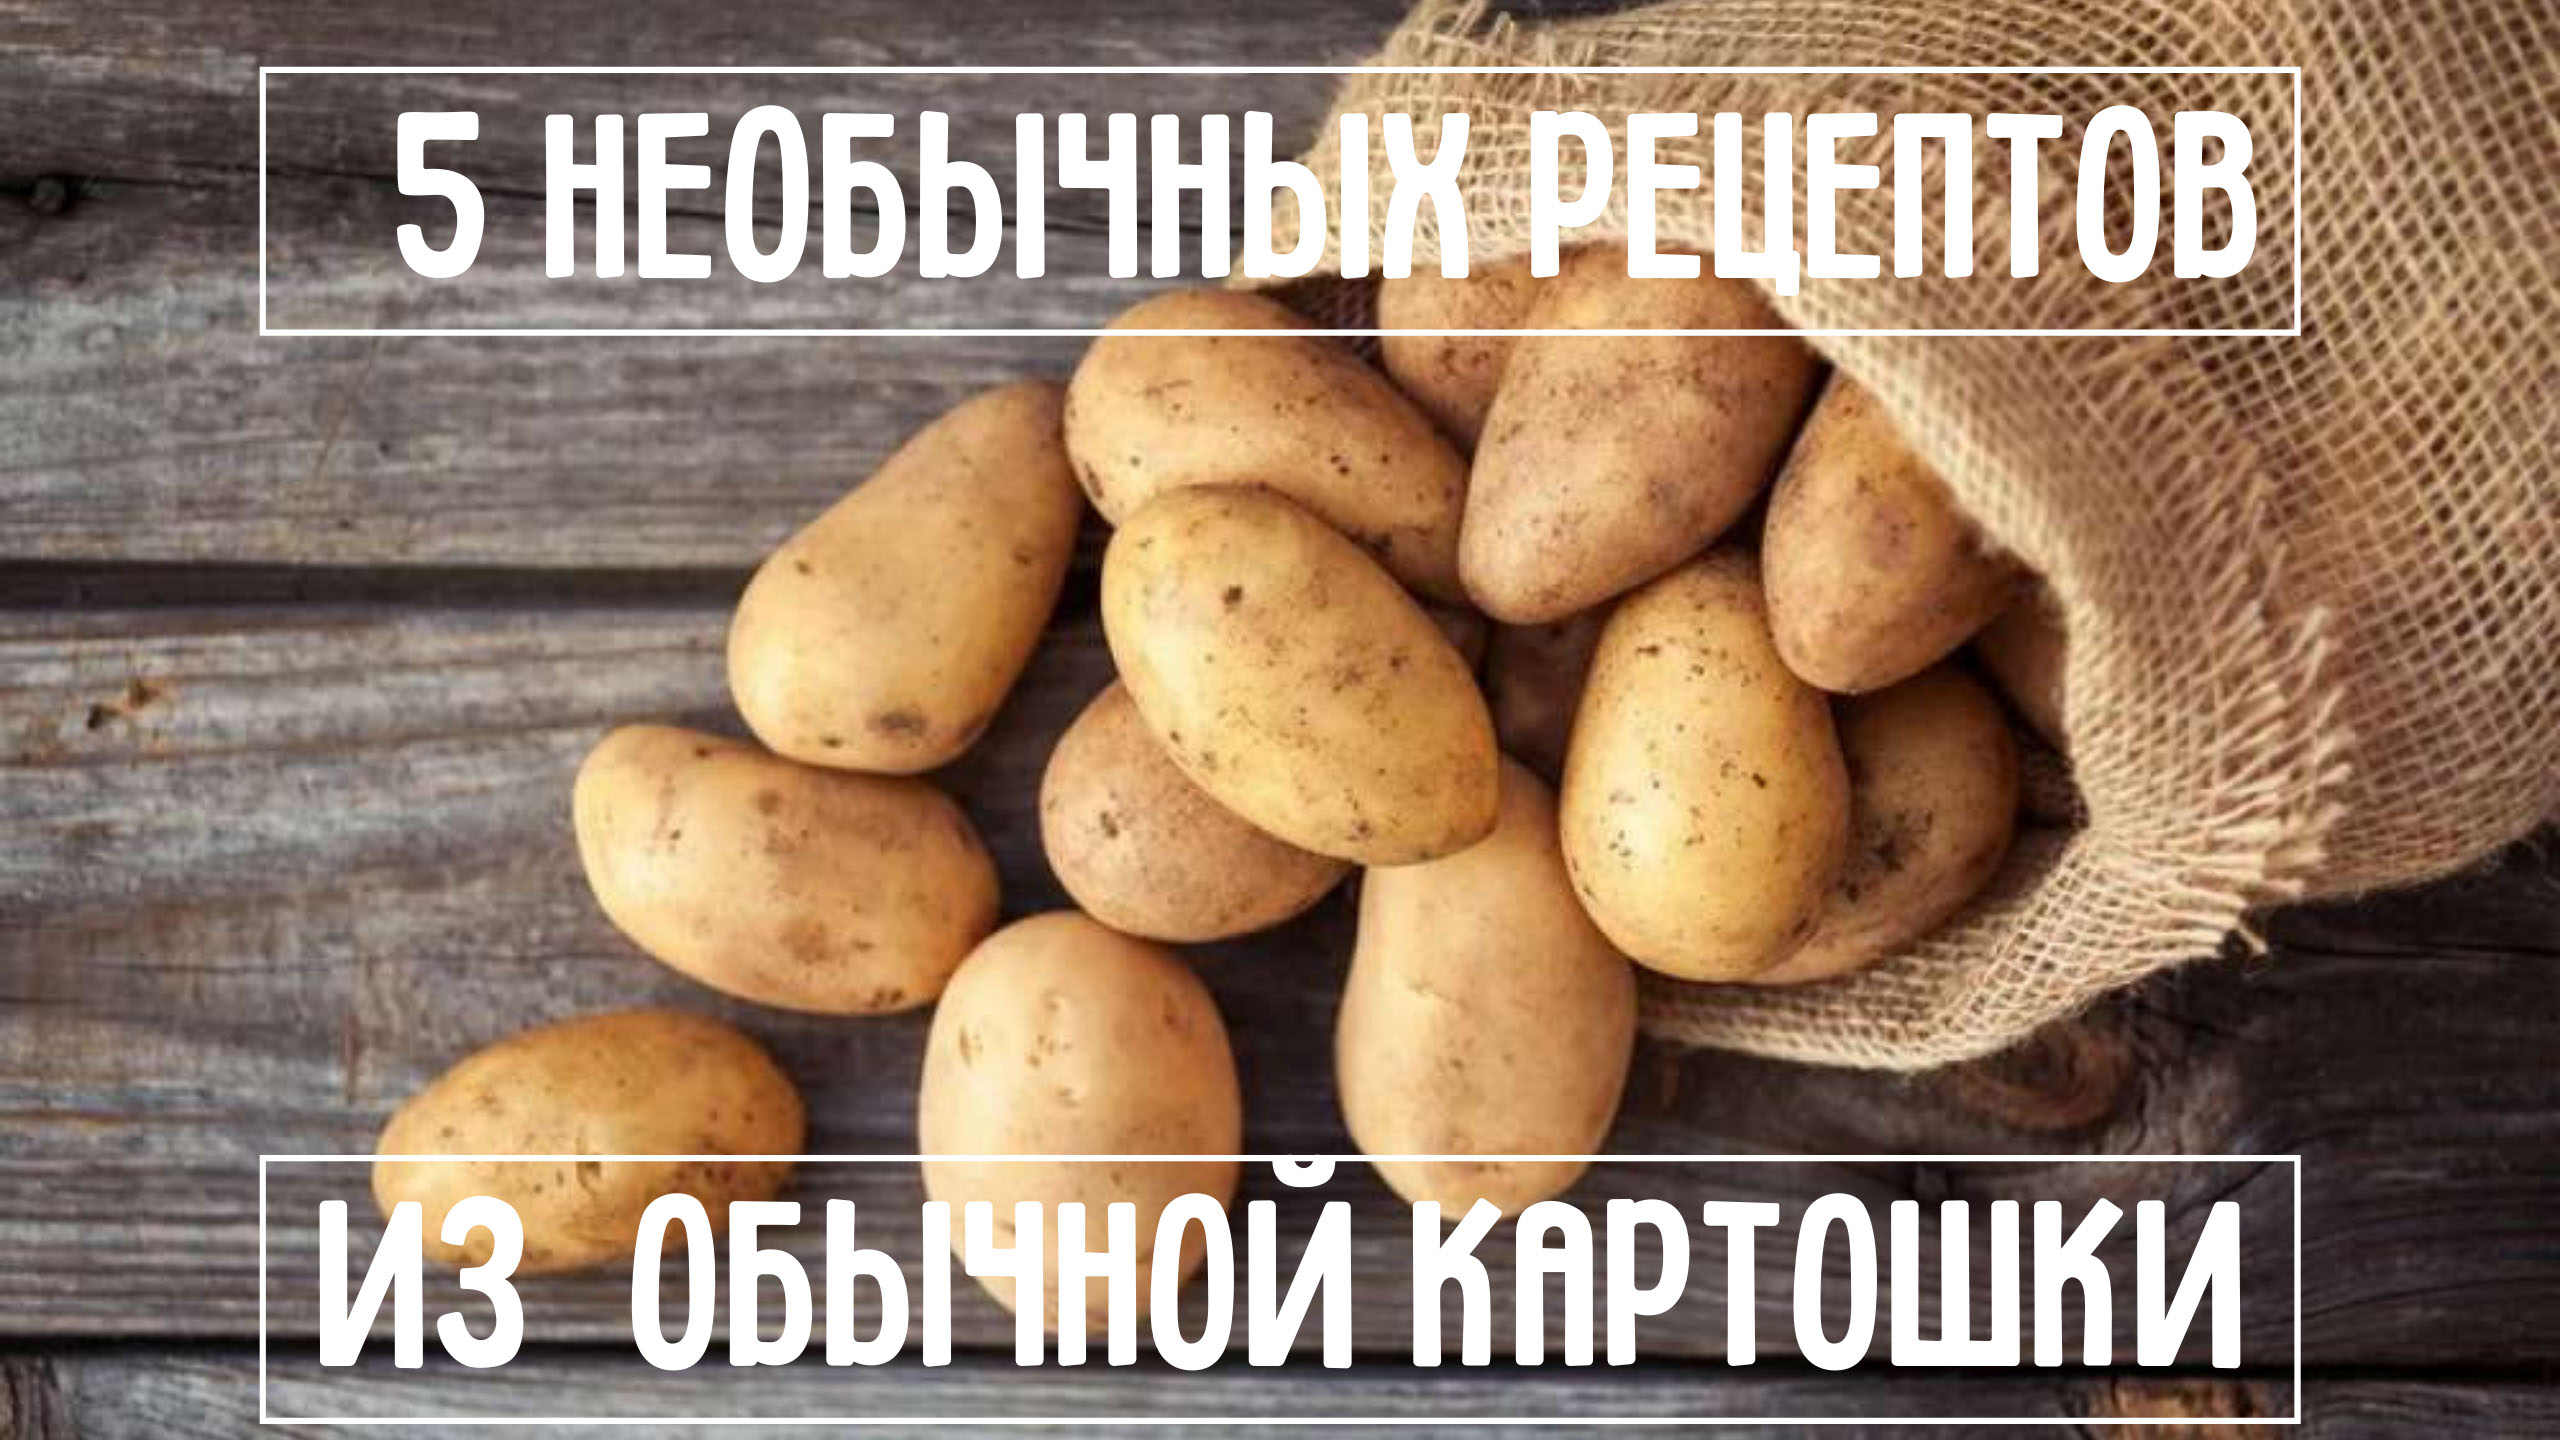 Как подарить картошку